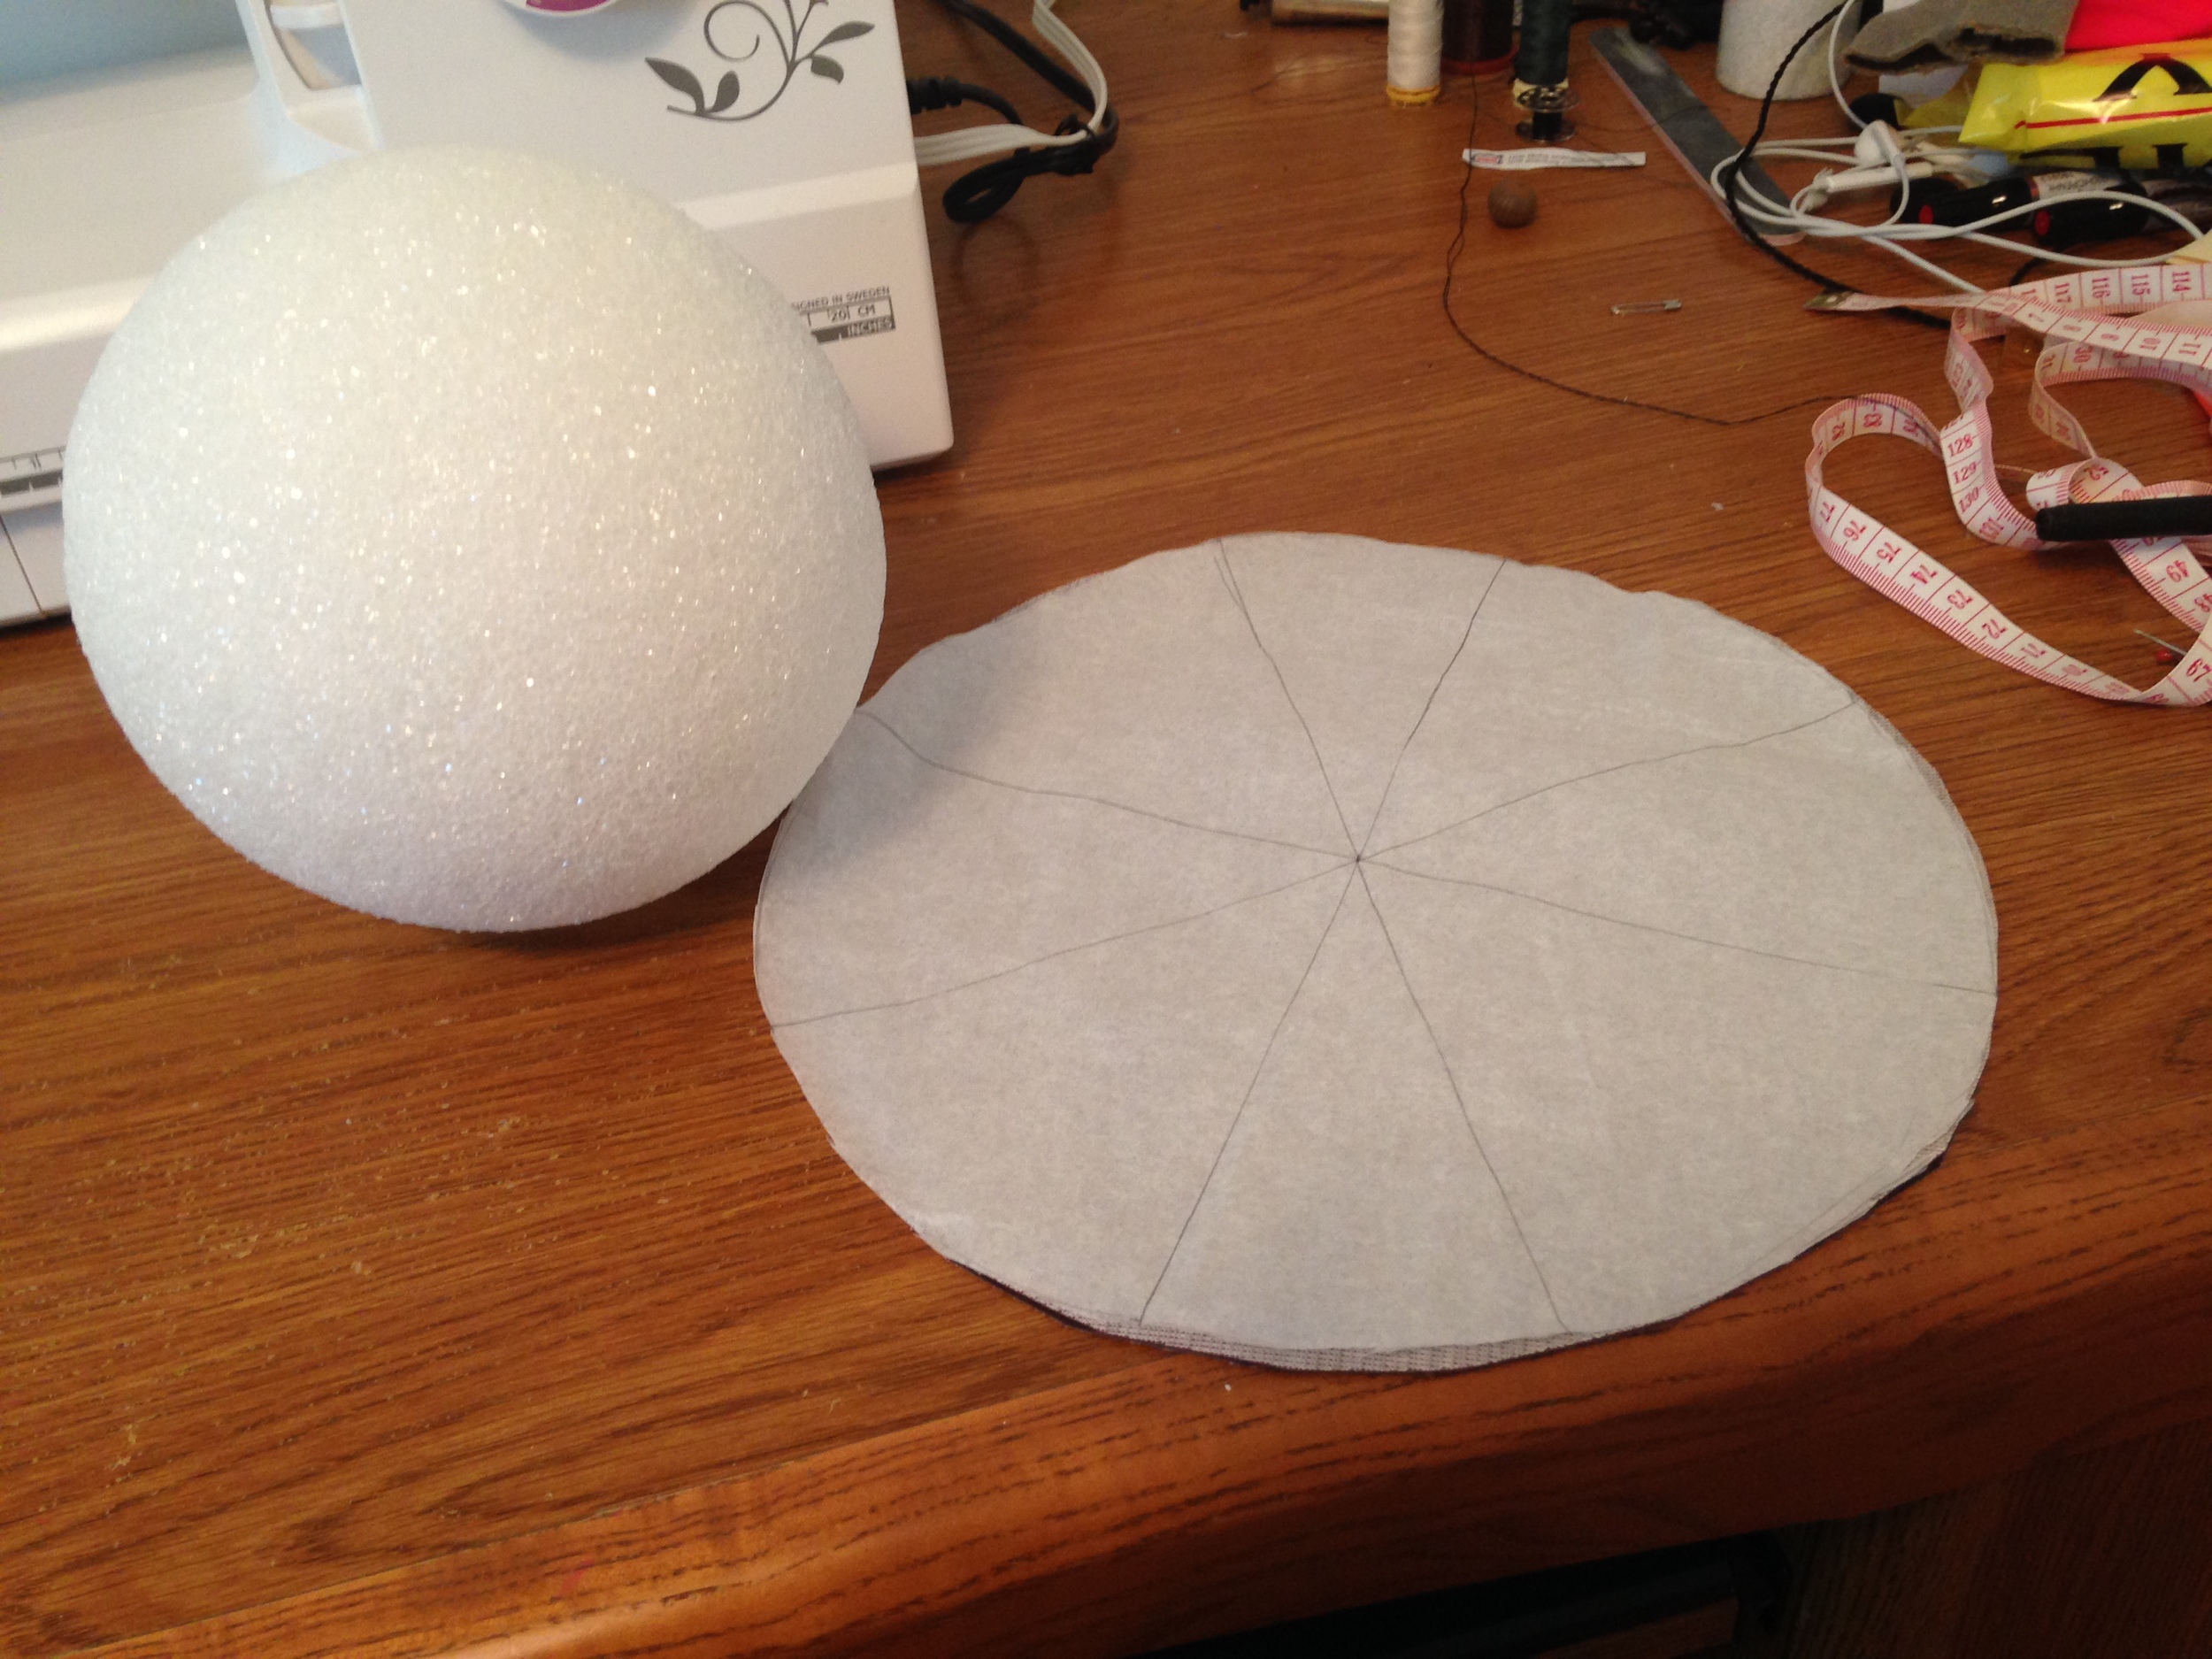 6' Styro foam ball and pattern